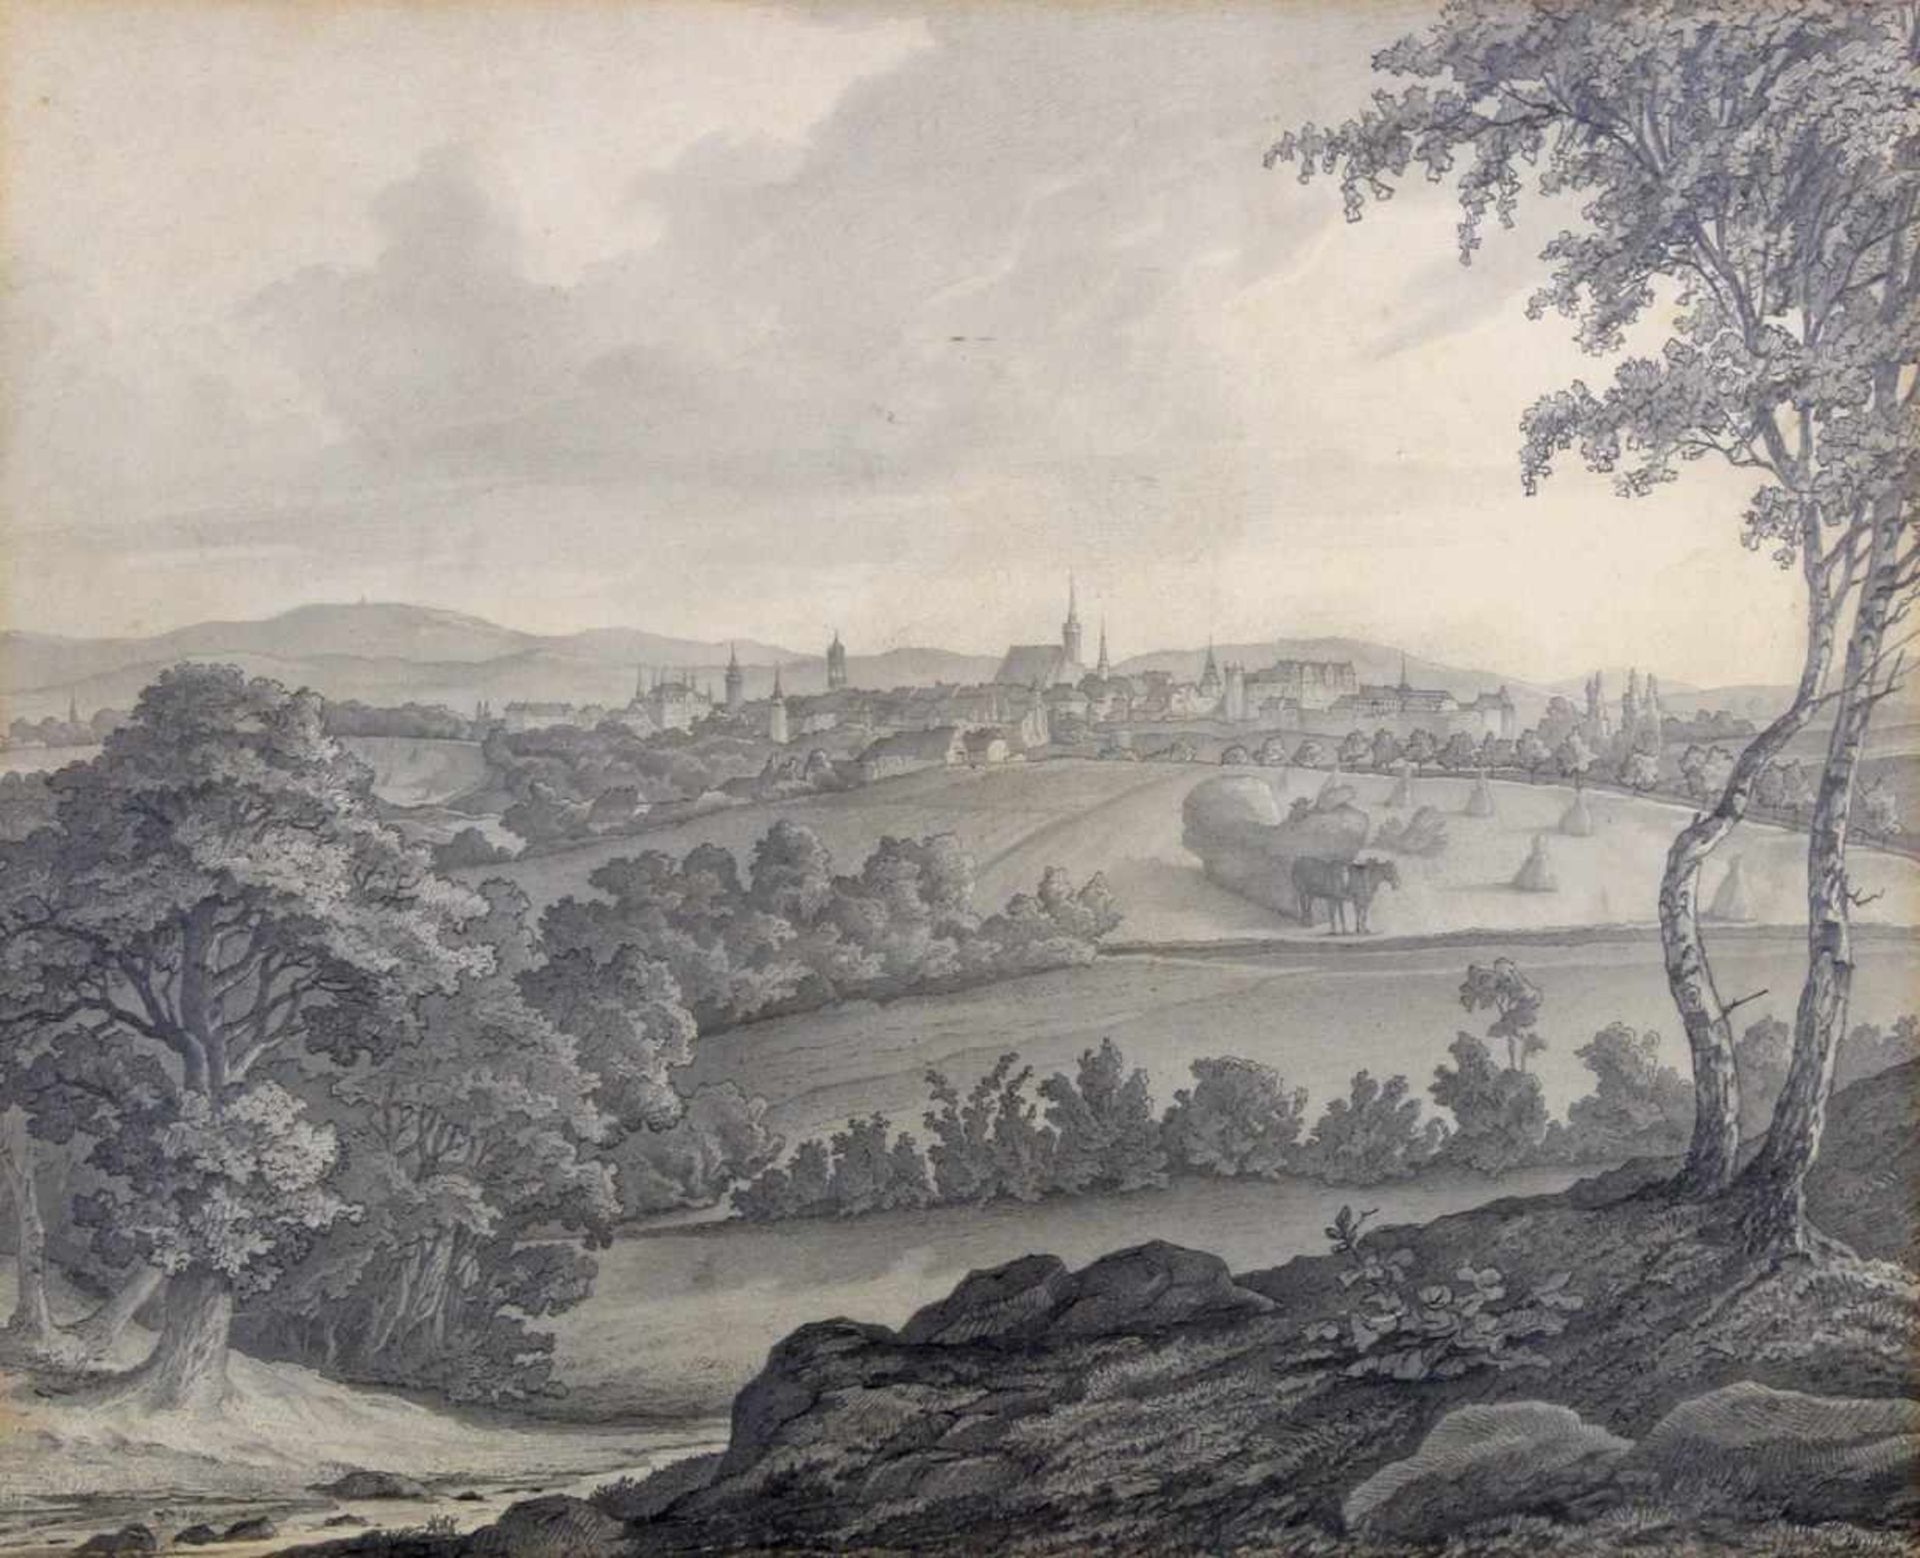 Förster, A. (19. Jh.), Bleistiftzeichnung, "Blick auf eine Stadt in hügeliger Landschaft",